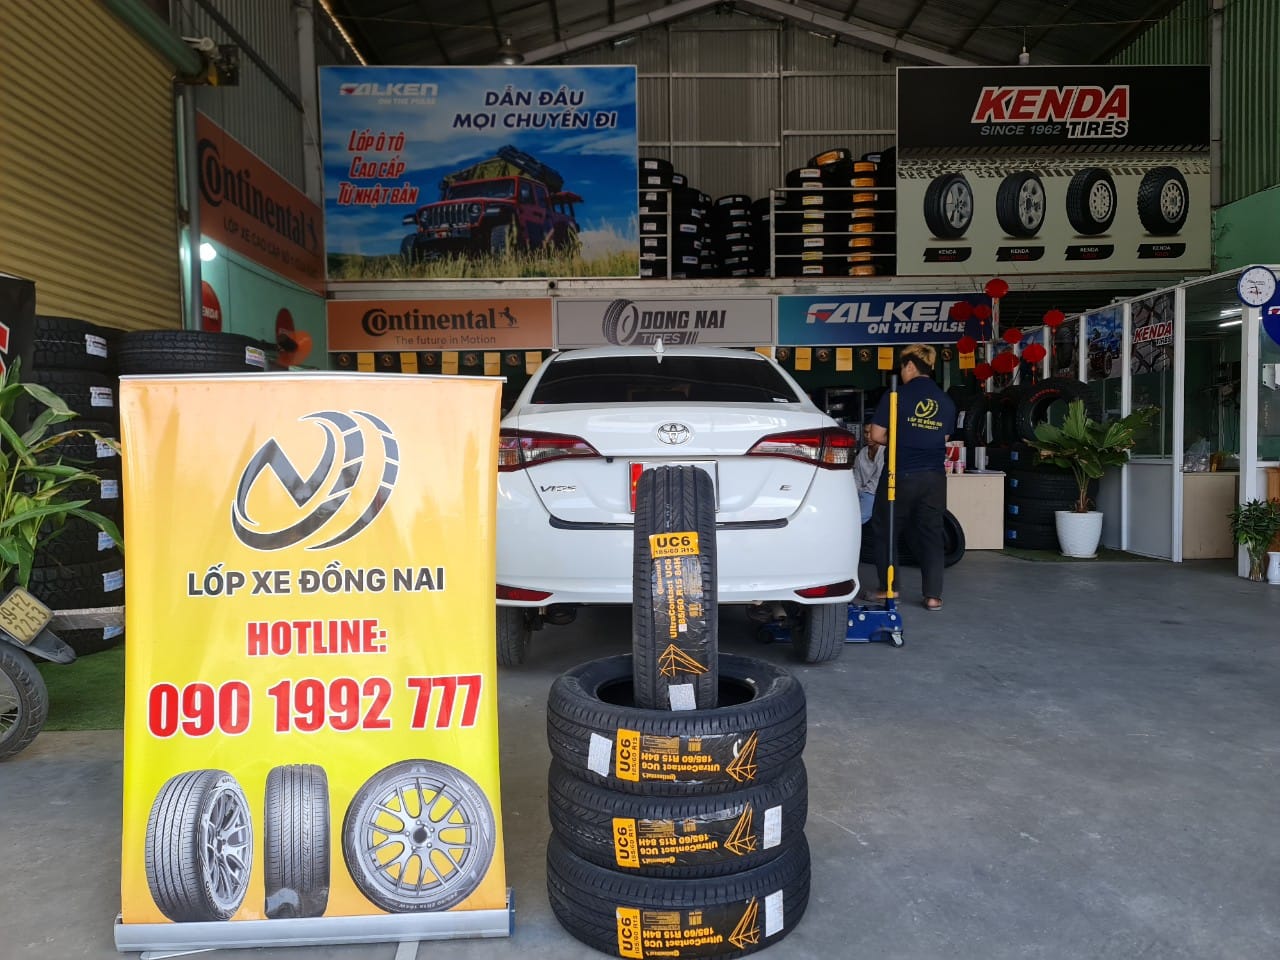 TƯ VẤN : Thay lốp xe Toyota Vios chính hãng ở Trảng Bom, Đồng Nai.